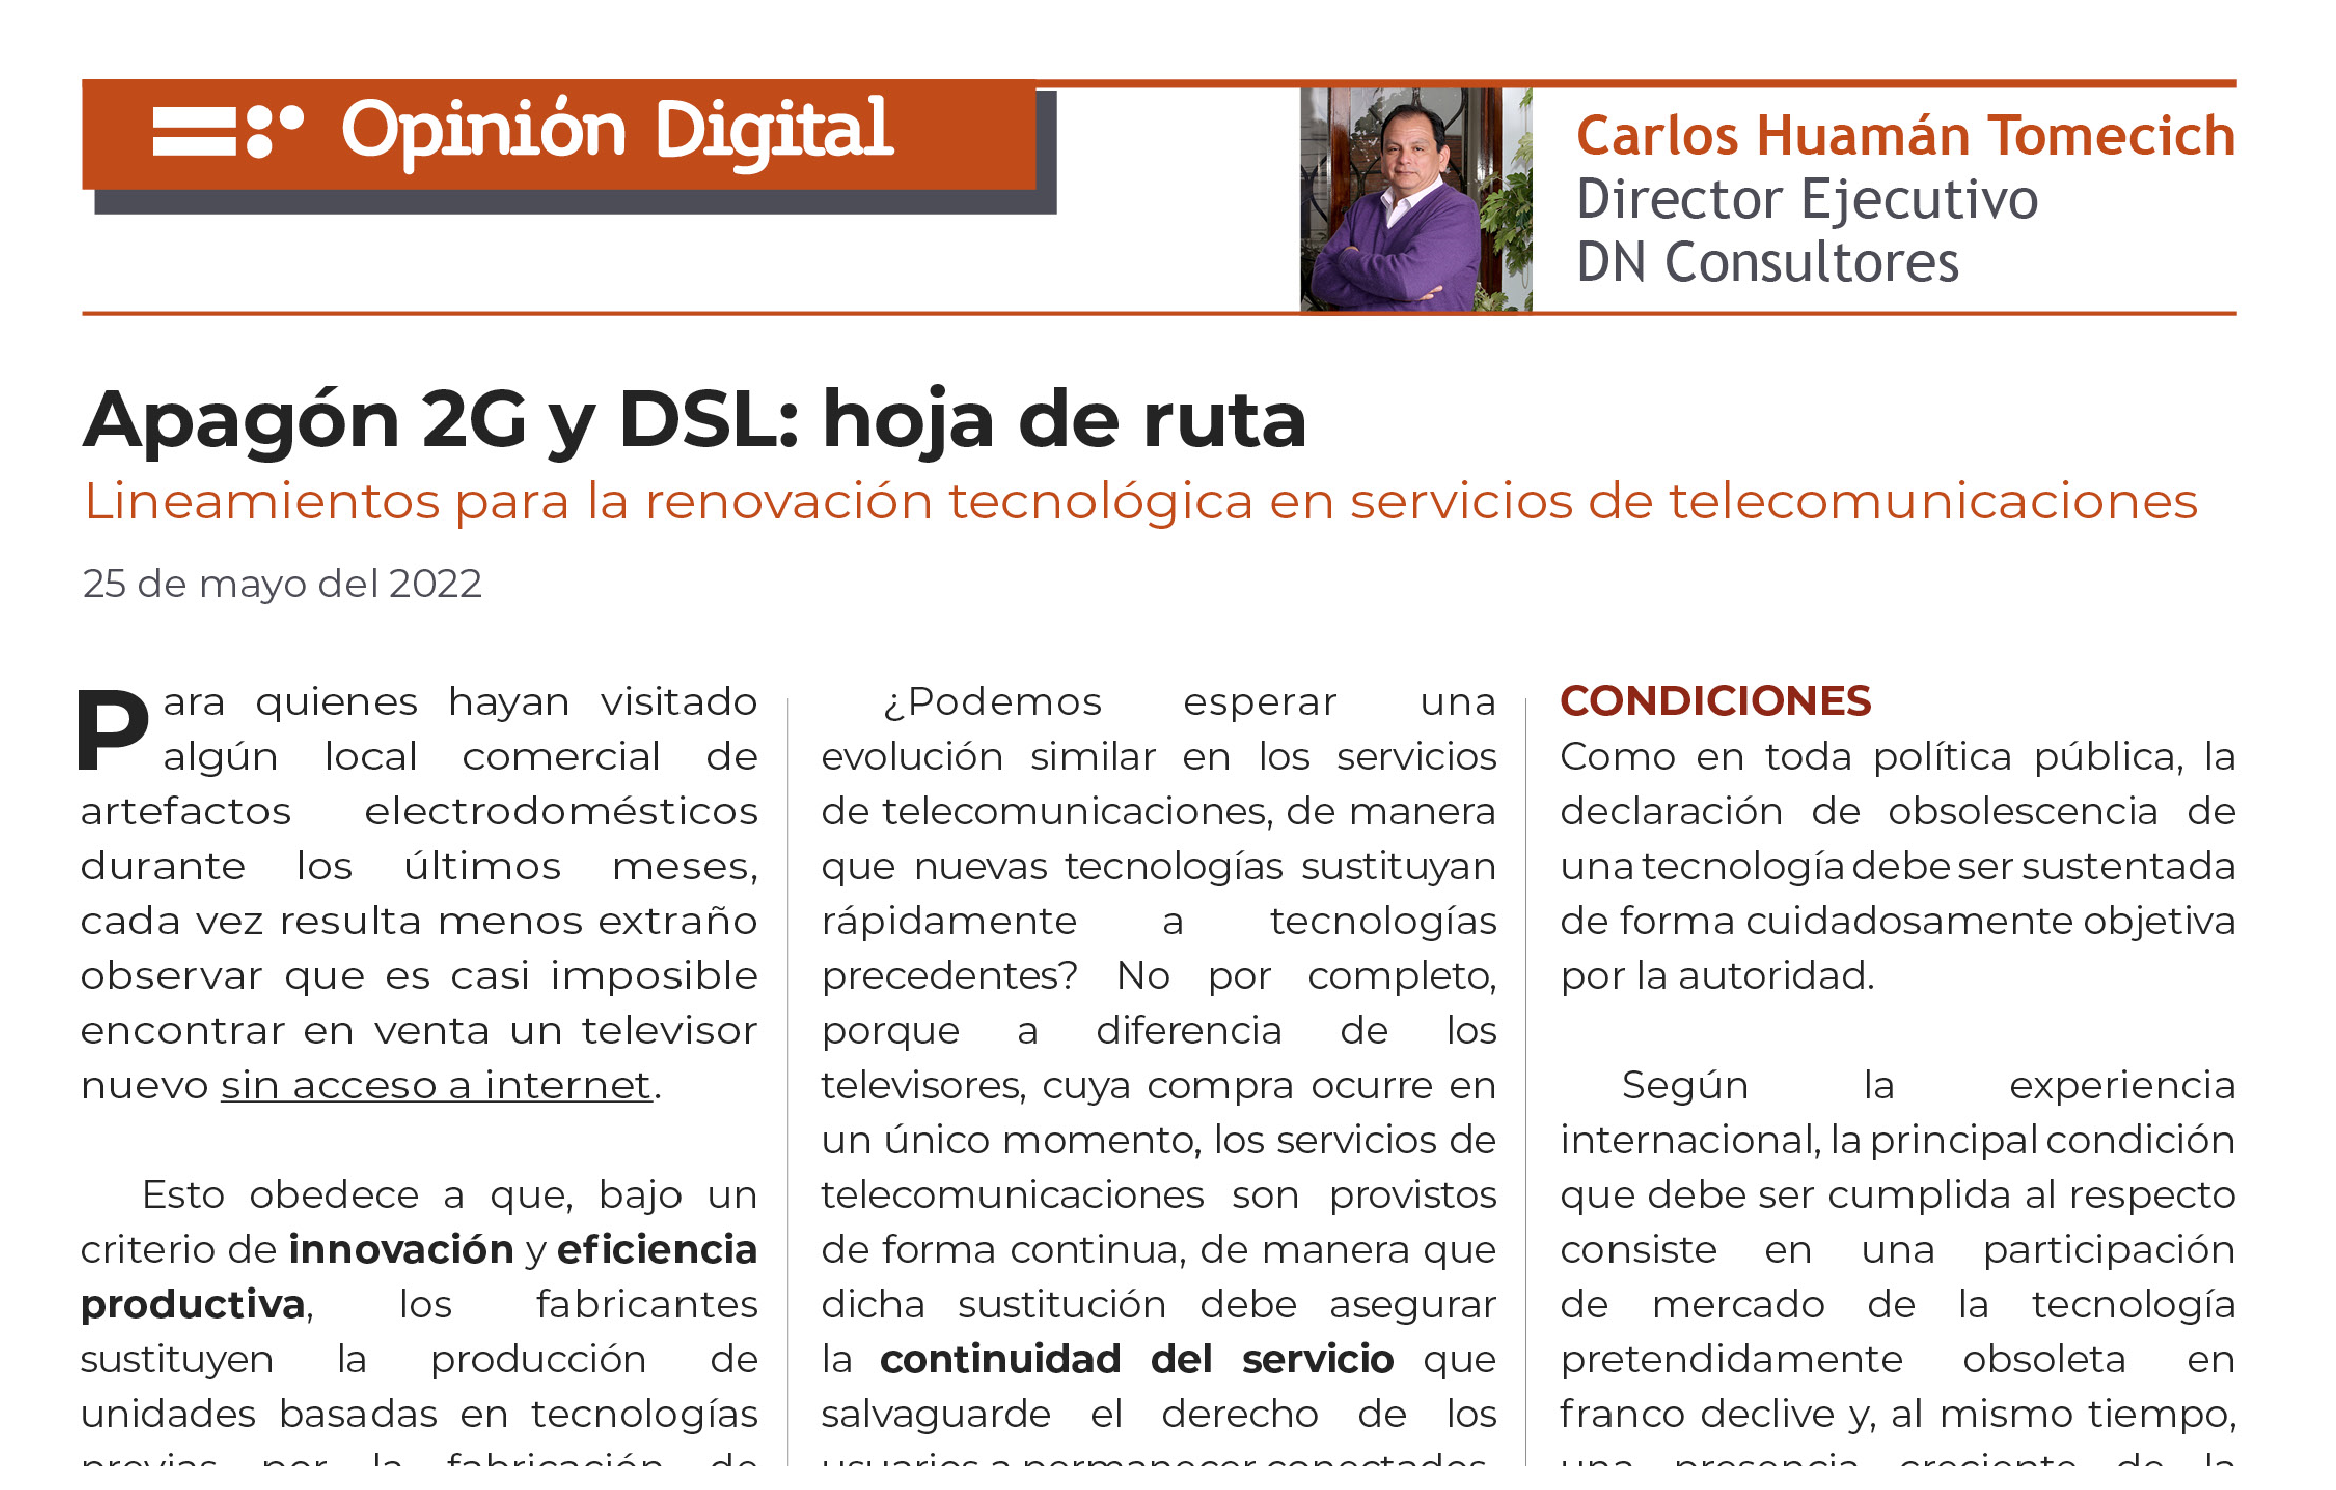  Apagón 2G y DSL: hoja de ruta  Lineamientos para la renovación tecnológica en servicios de telecomunicaciones 